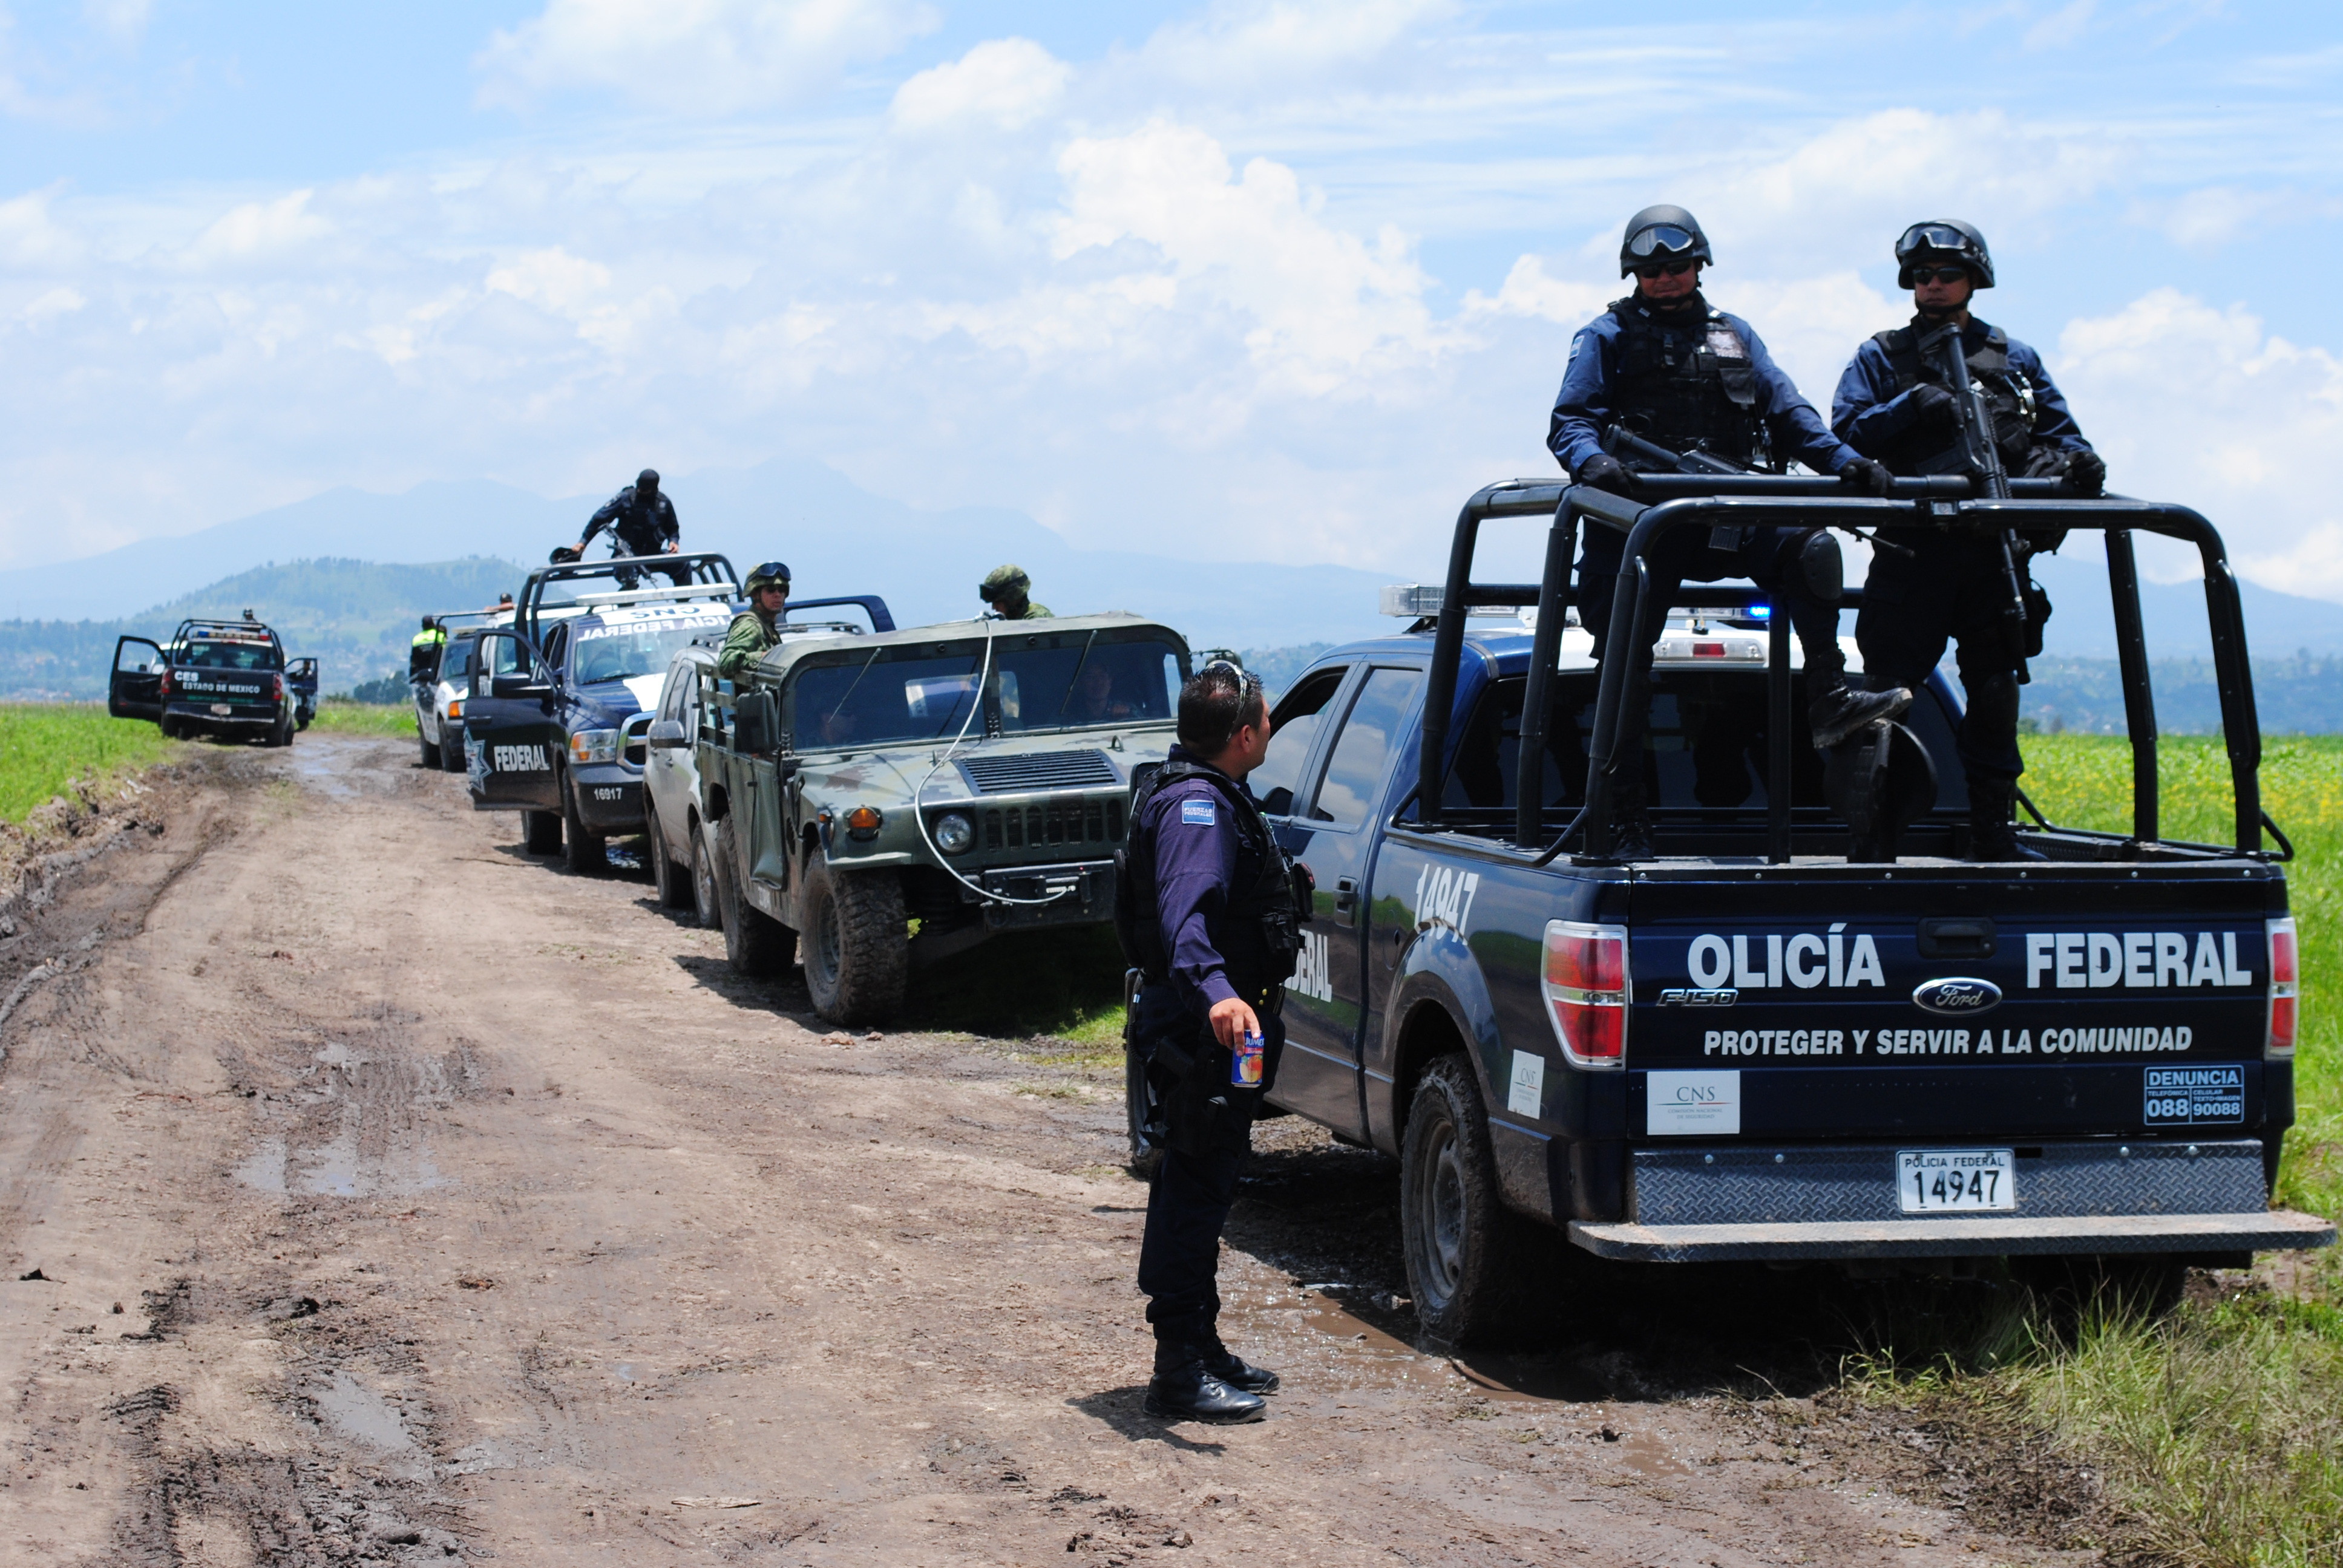 Мексиканские полицеские и военные во время спецоперации по поимке наркоторговцев. Фото: &copy;РИА Новости/Дмитрий Знаменский